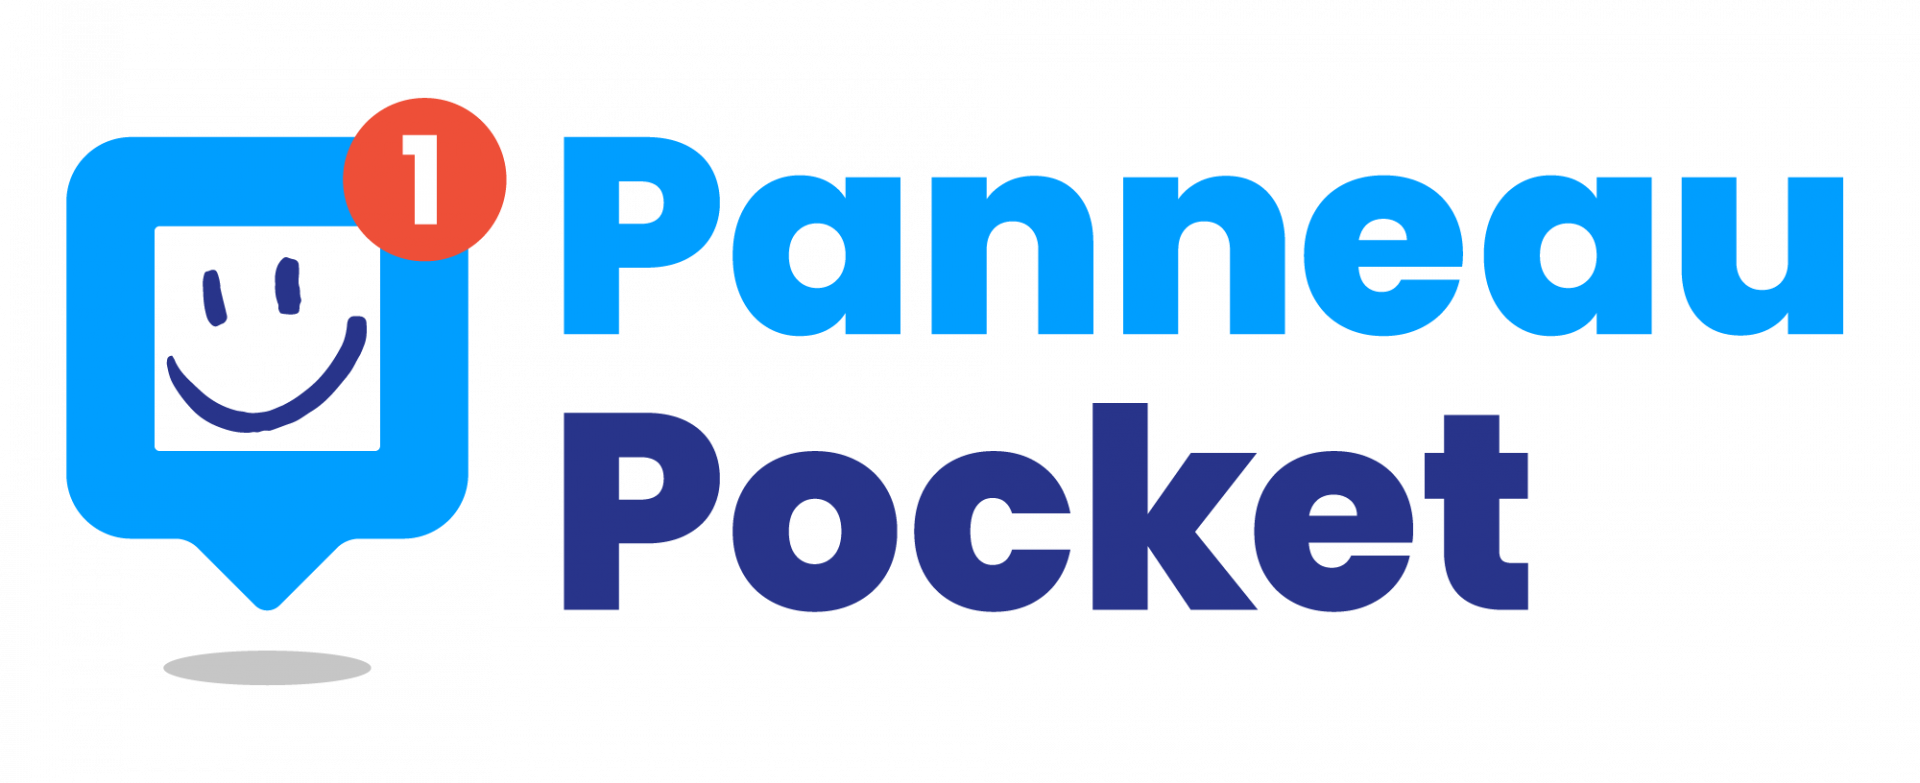 Panneau Pocket Charrey-sur-Saône